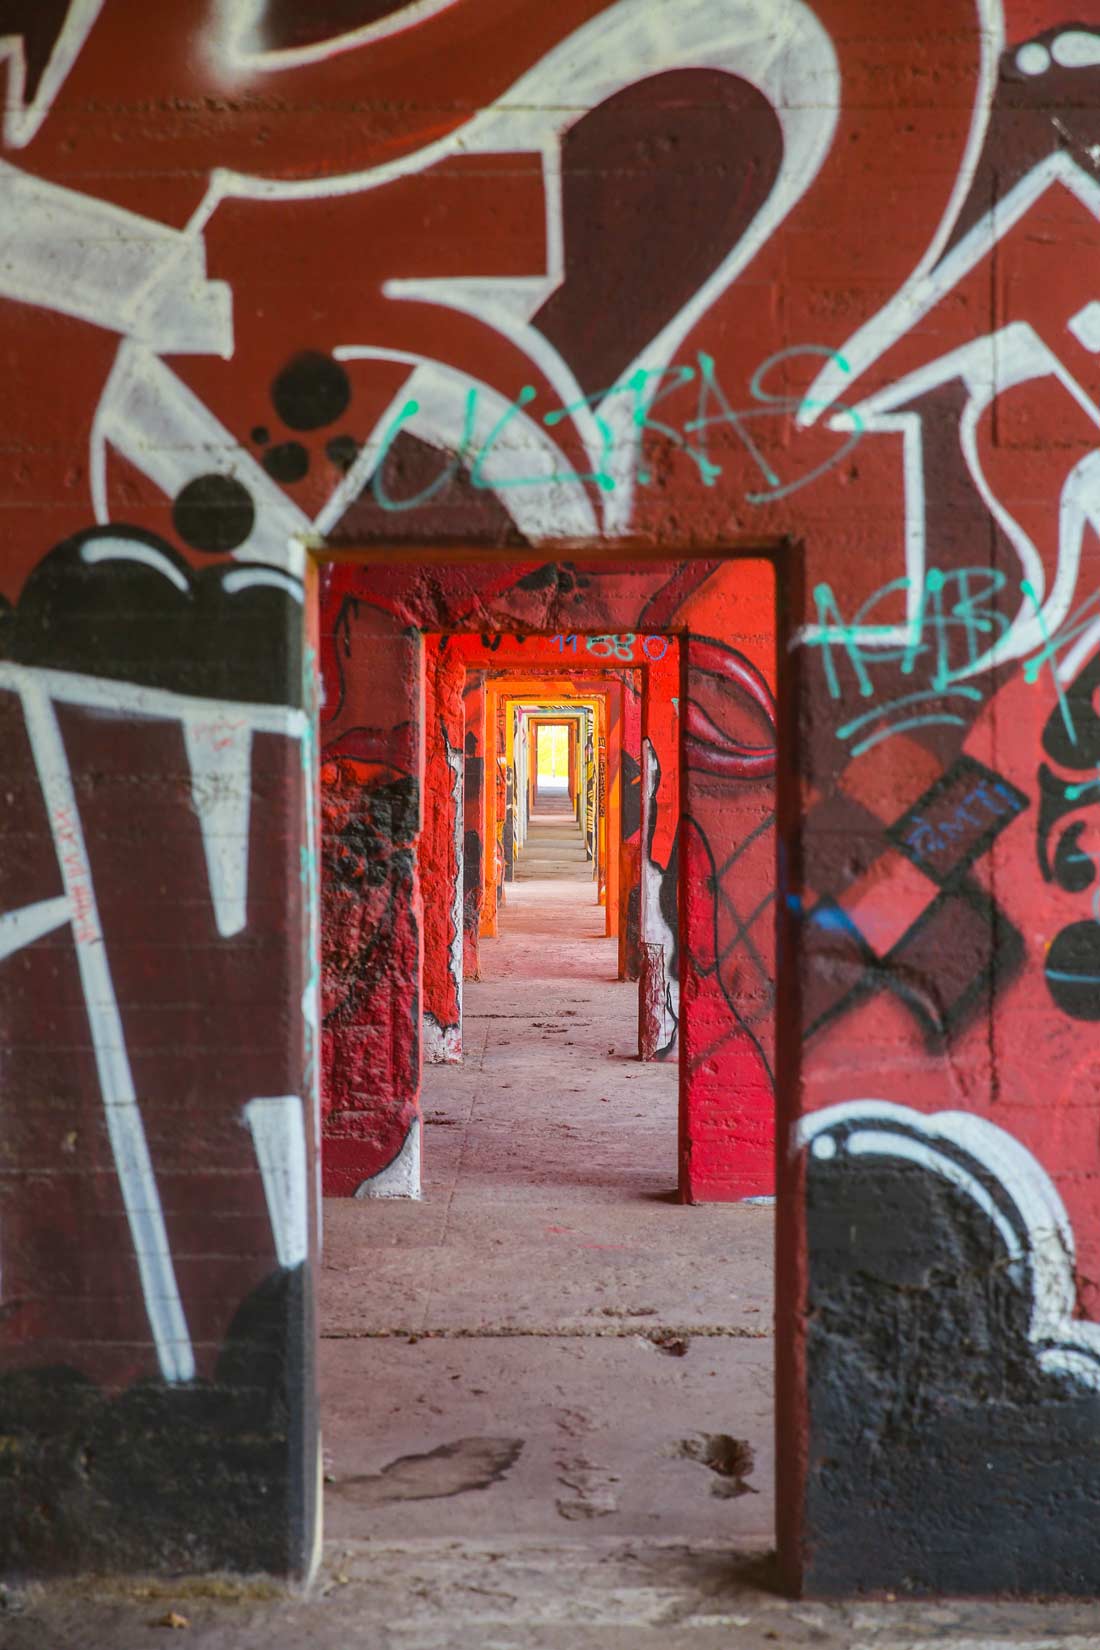 Durchgänge in einer verlassenen Industrieanlage mit Graffiti